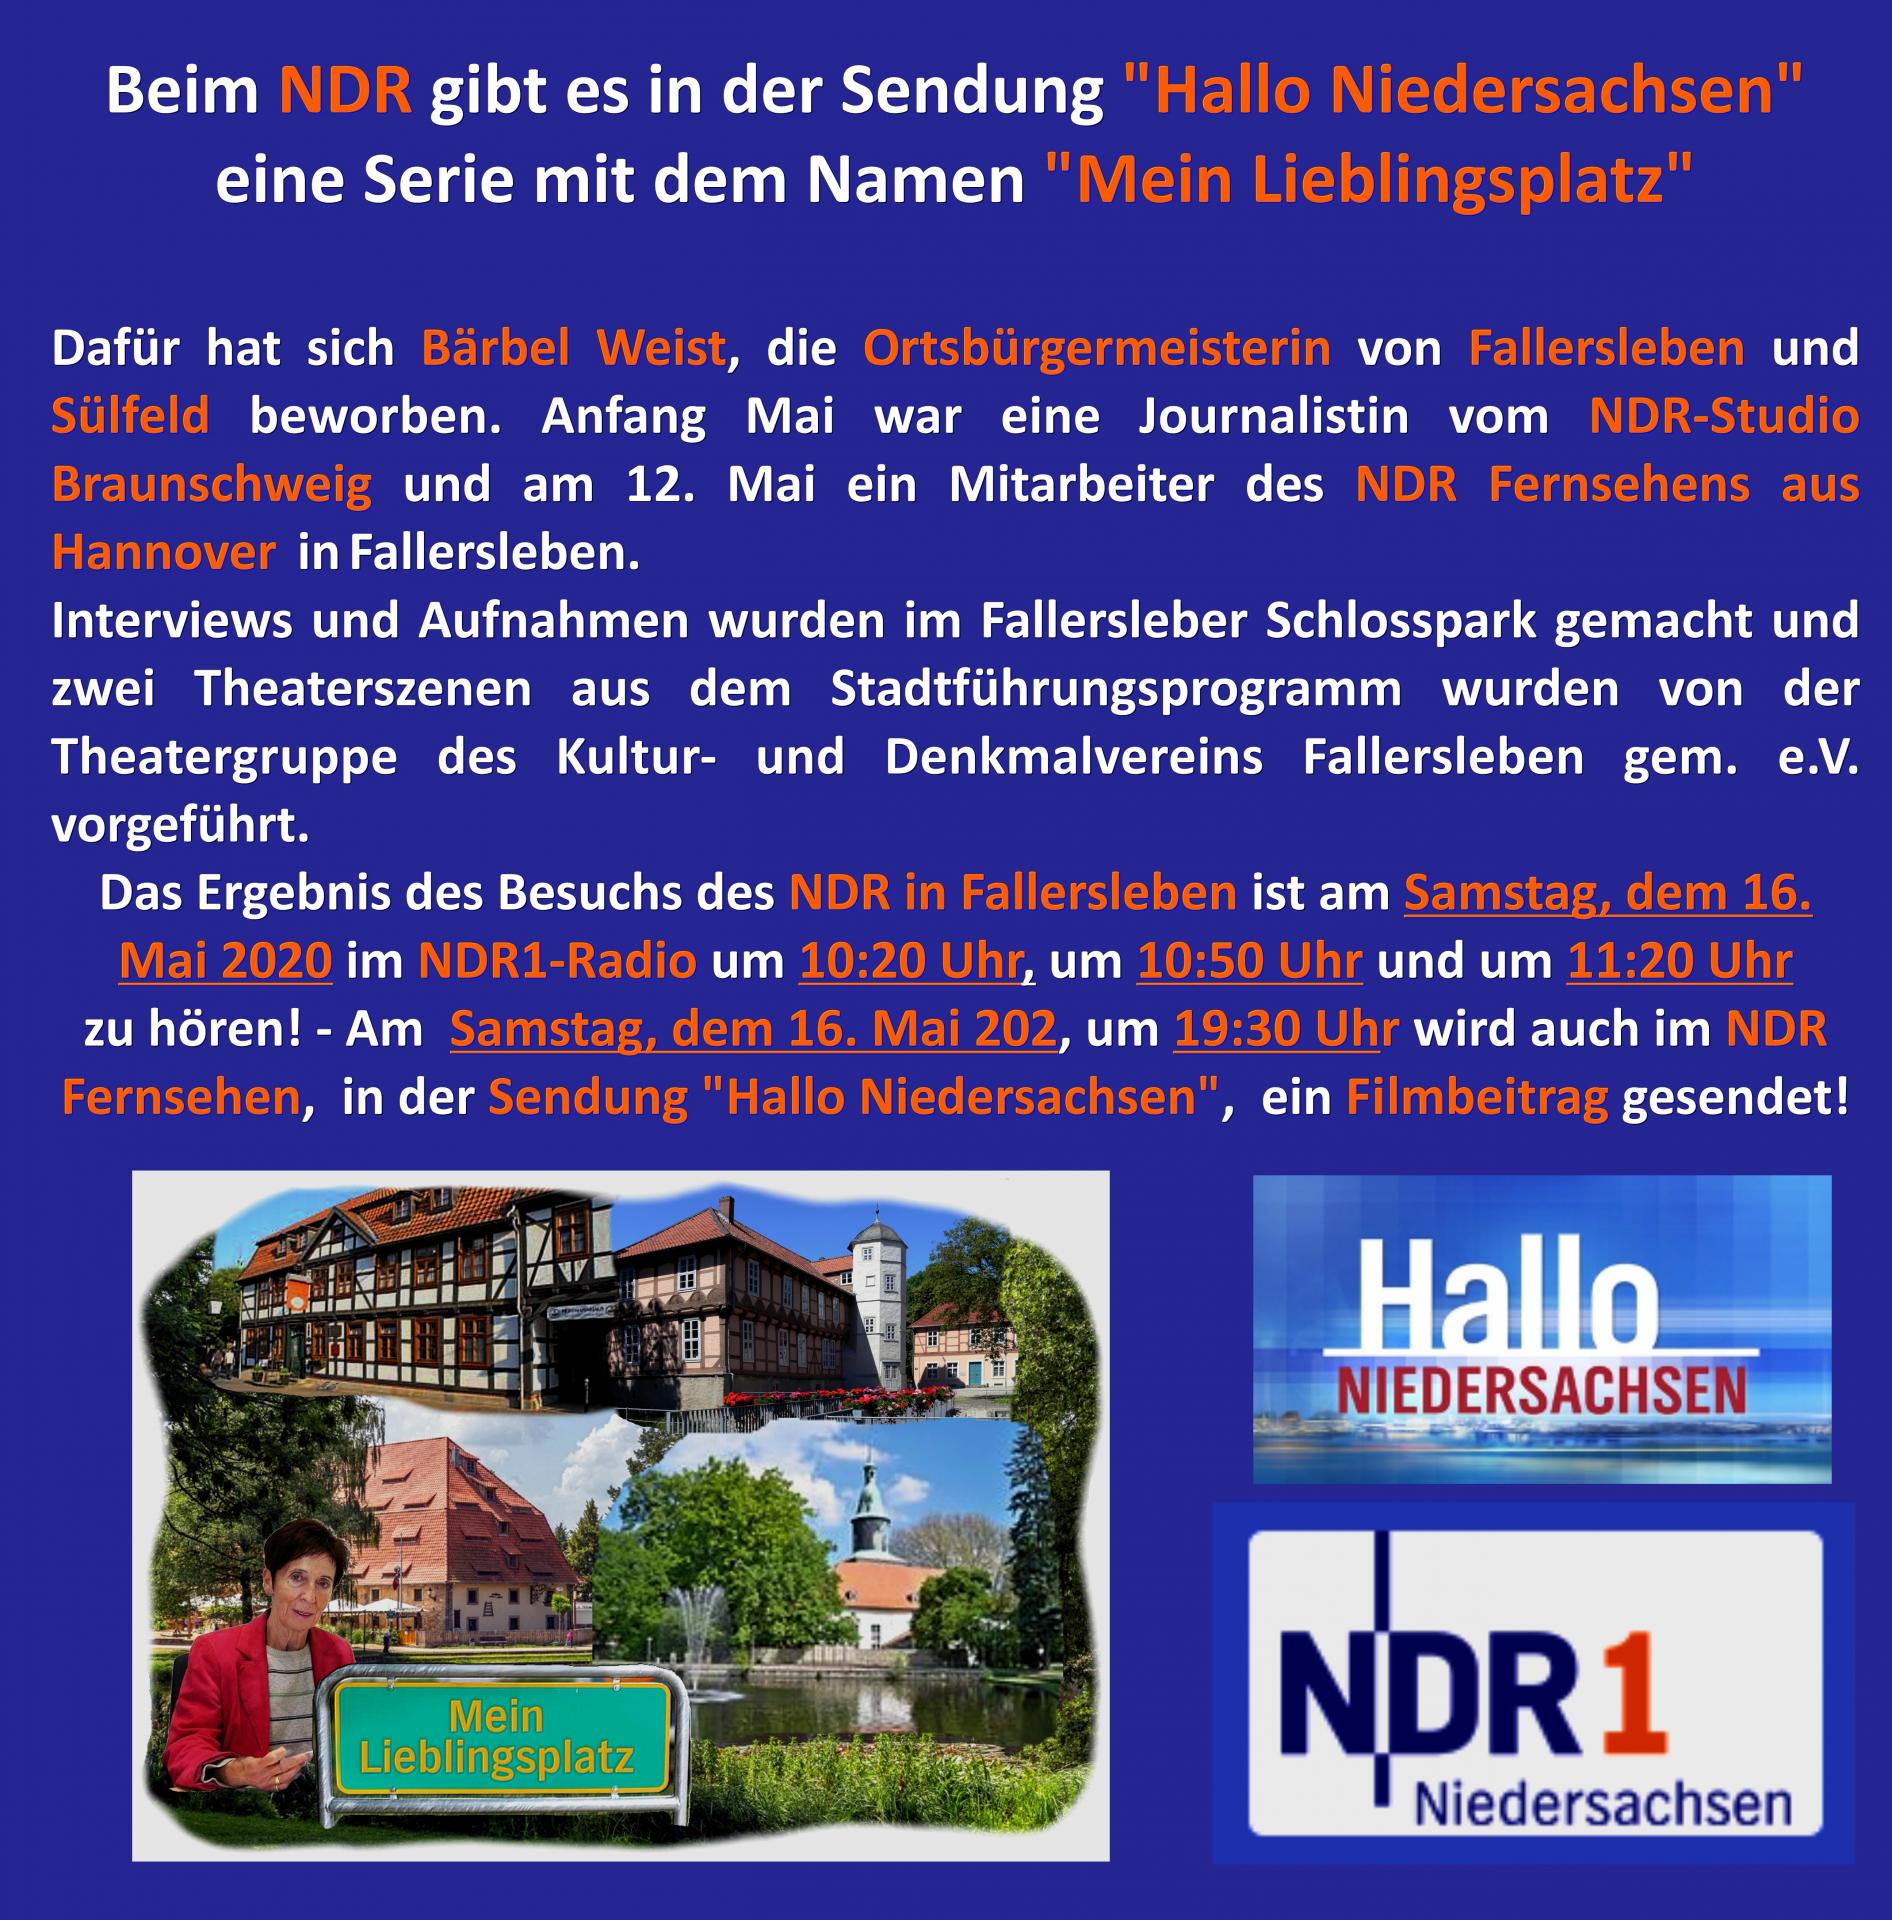 NDR-Mein Lieblingsplatz-Schlosspark_Fallersleben